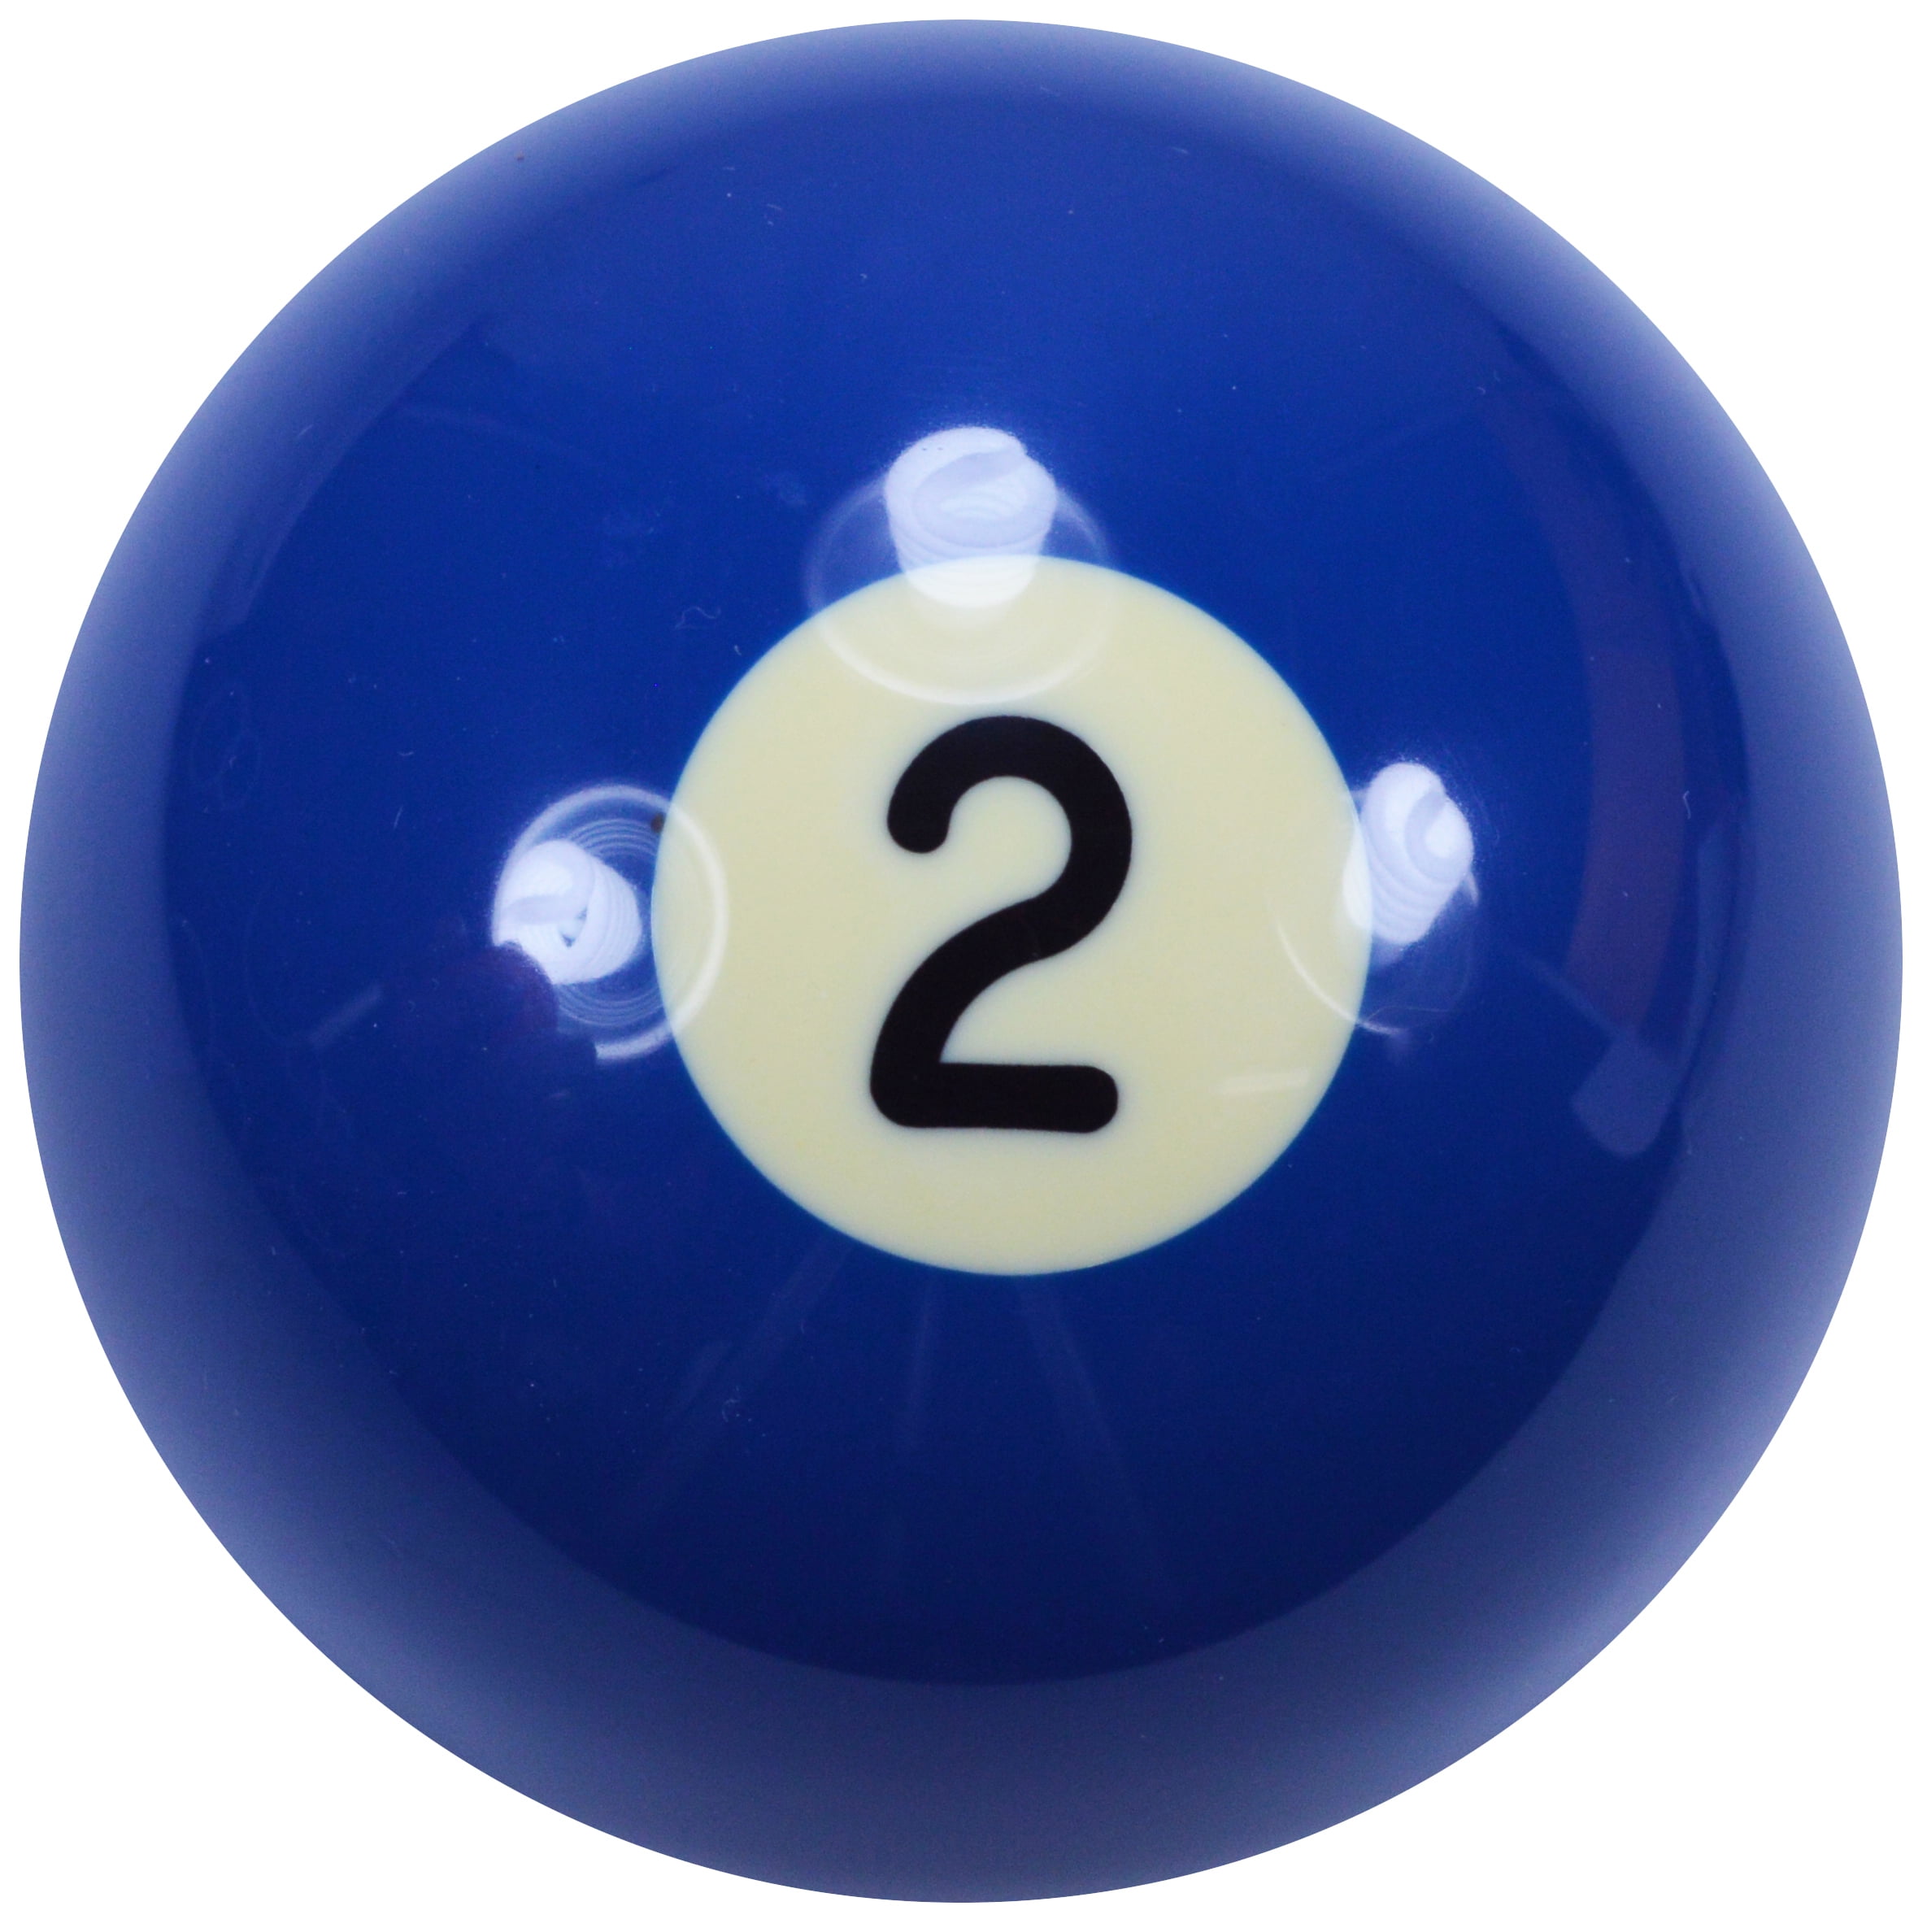 thirteen 2 1/4" new regulation pool/biliard ball replacement Nunber " 13 " 